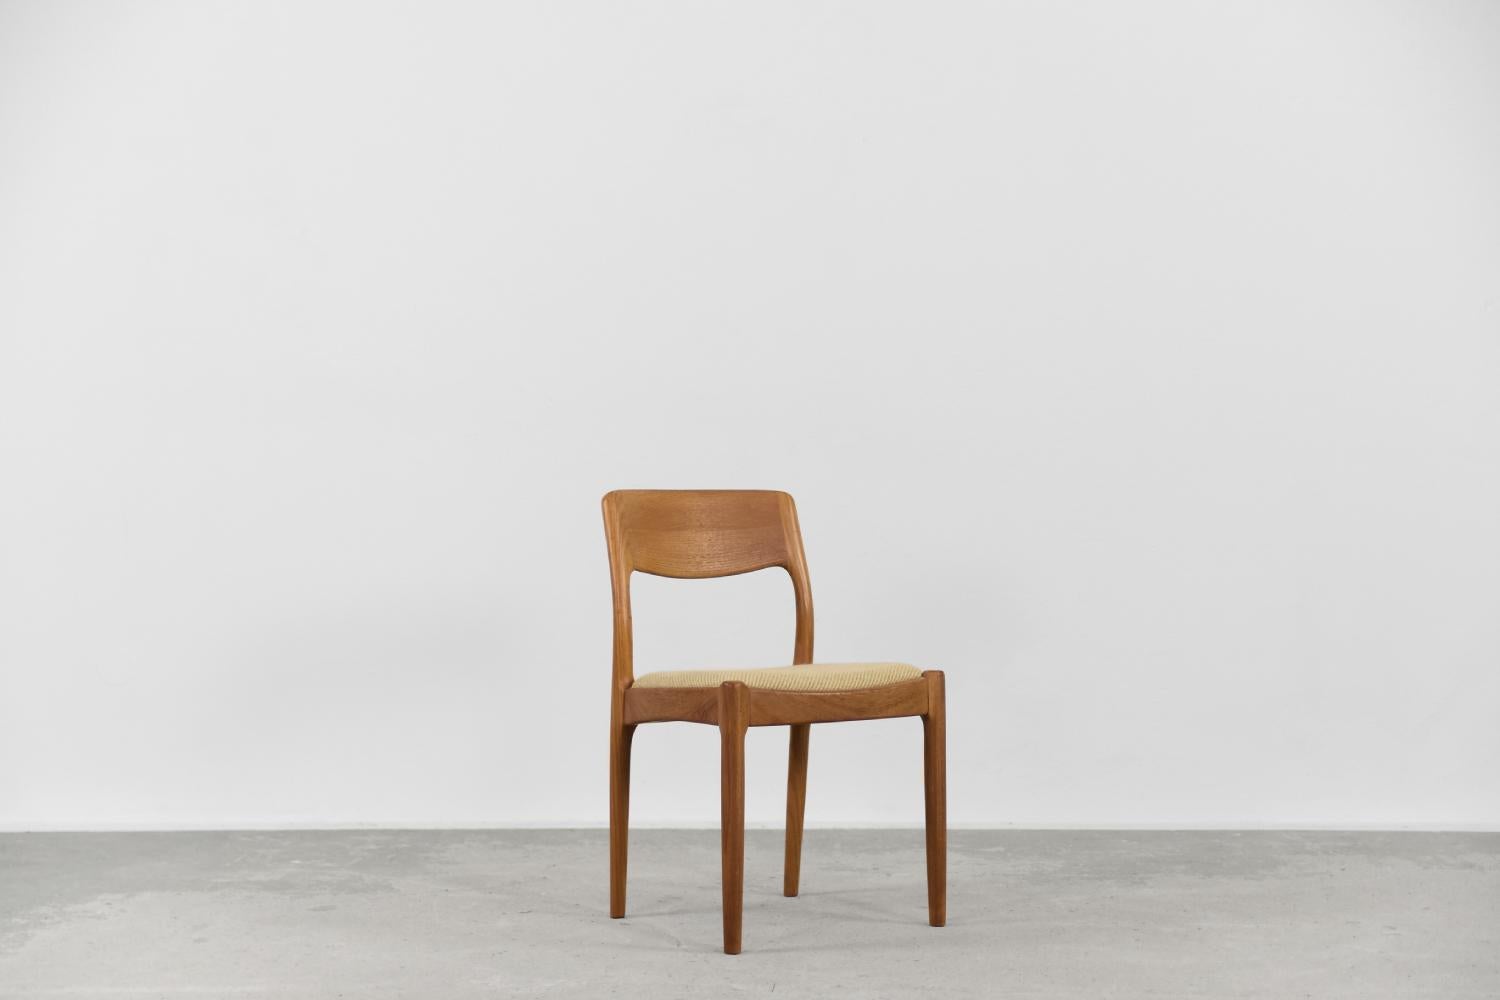 Dieser modernistische Esszimmerstuhl wurde in den 1960er Jahren von Juul Kristensen für die dänische Manufaktur JK Denmark entworfen. Der Stuhl ist aus massivem Teakholz in einem warmen Braunton mit starker Maserung gefertigt. Die konturierte